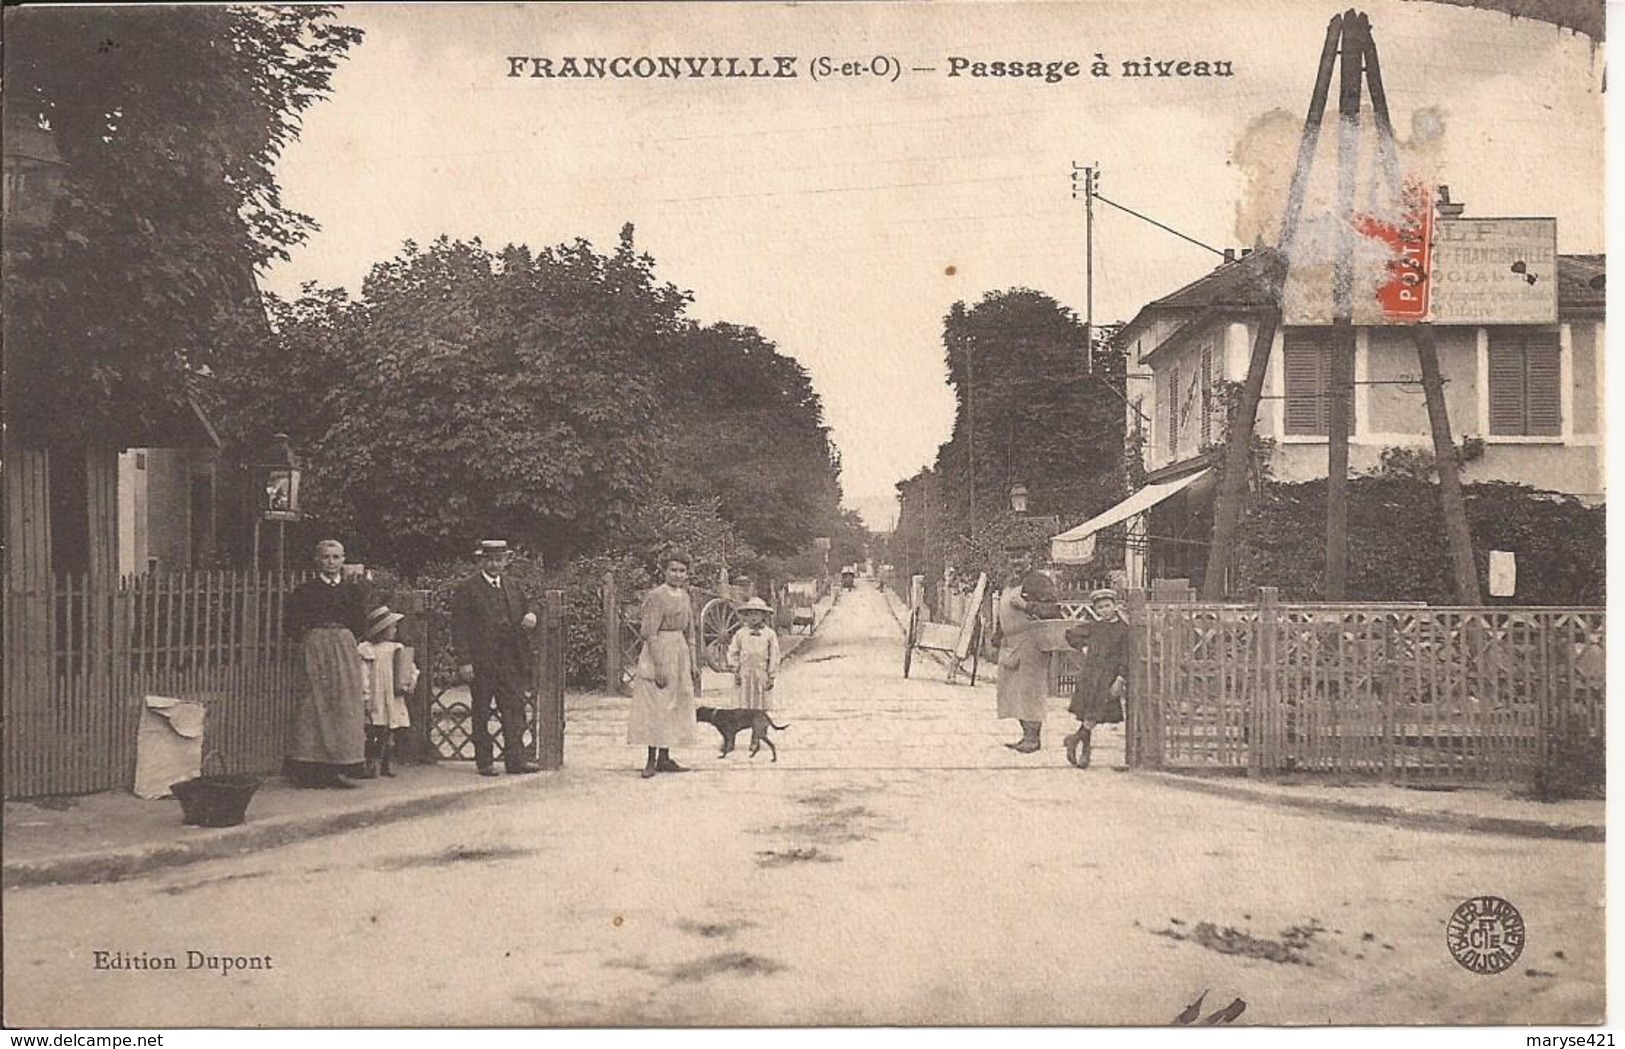 FRANCONVILLE PASSAGE A NIVEAU - Franconville